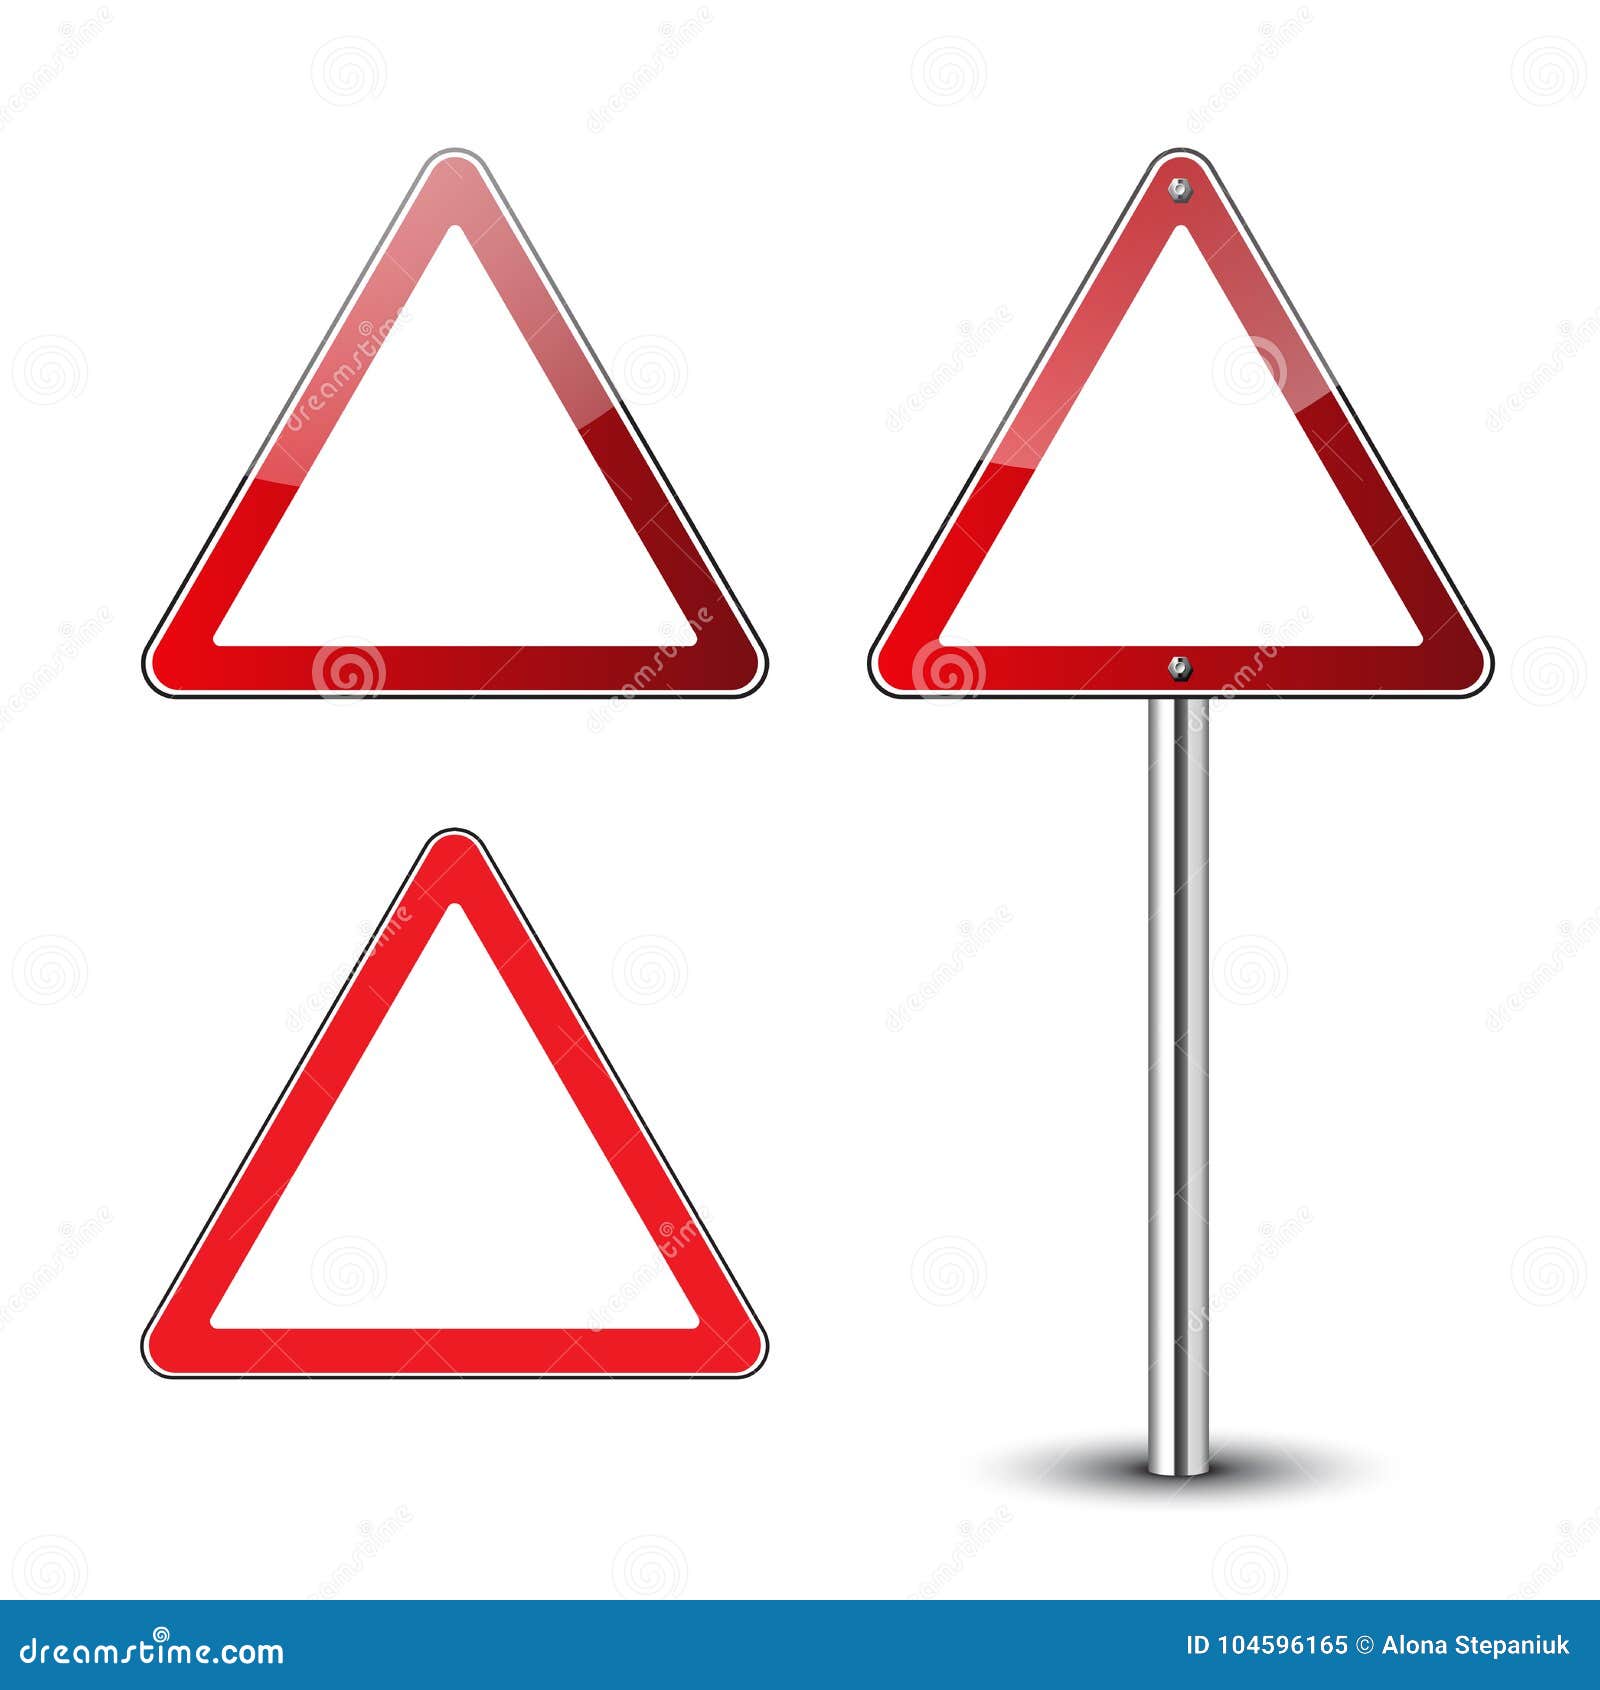 Треугольные дорожные знаки. Треугольные предупреждающие знаки. Красный треугольный дорожный знак. Треугольные и квадратные дорожные знаки. Перевернутый треугольник знак дорожного